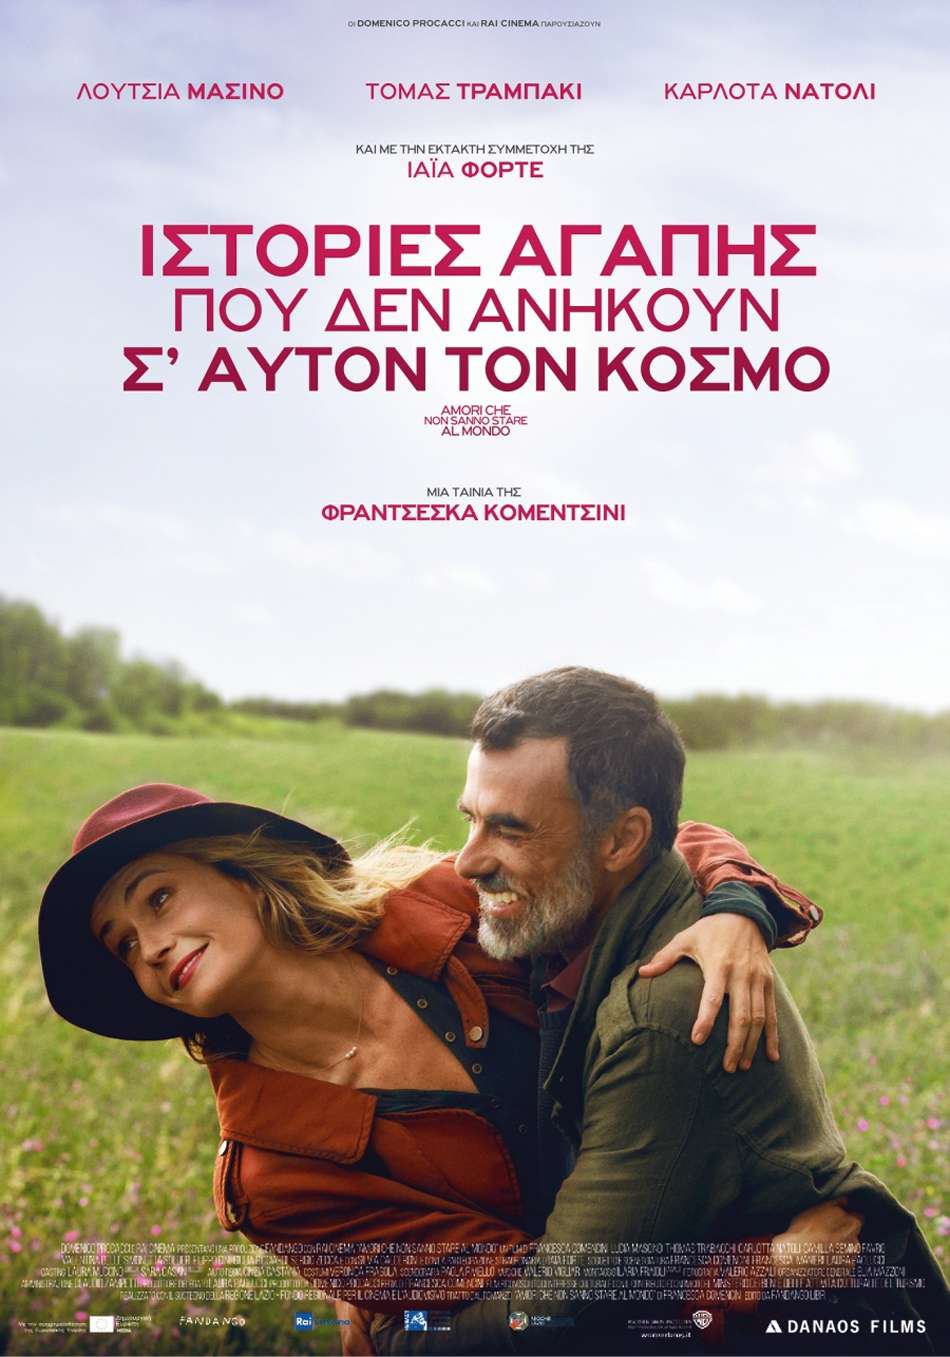 Ιστορίες Αγάπης που δεν Ανήκουν σ’ Αυτόν τον Κόσμο (Amori che non sanno stare al mondo) Poster